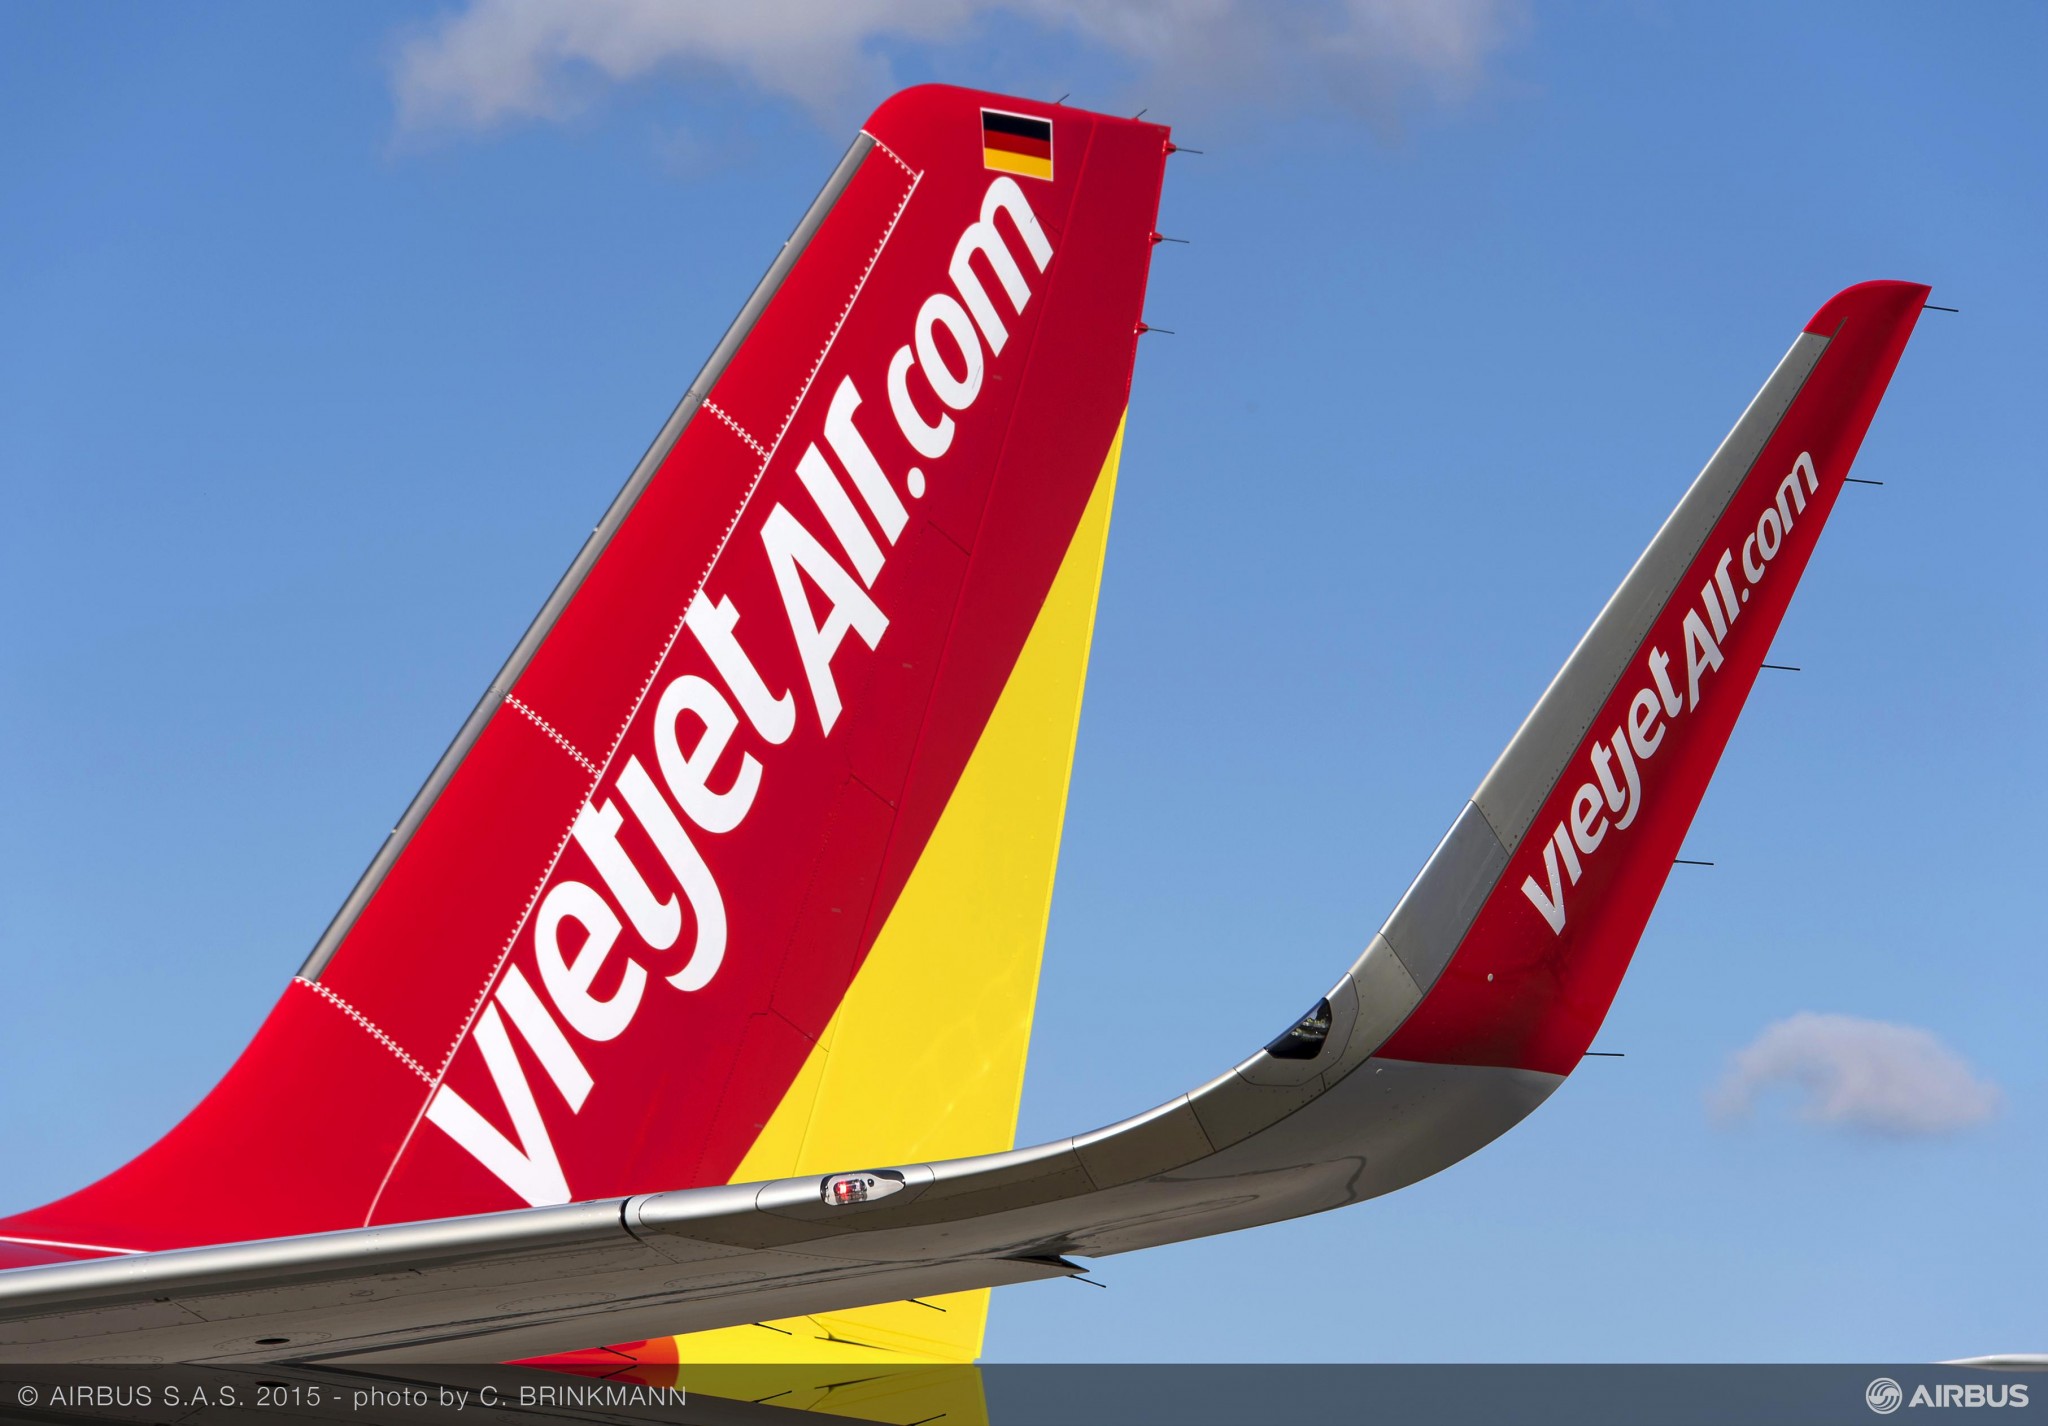 Vietjet announces Interline agreement with Qatar Airways